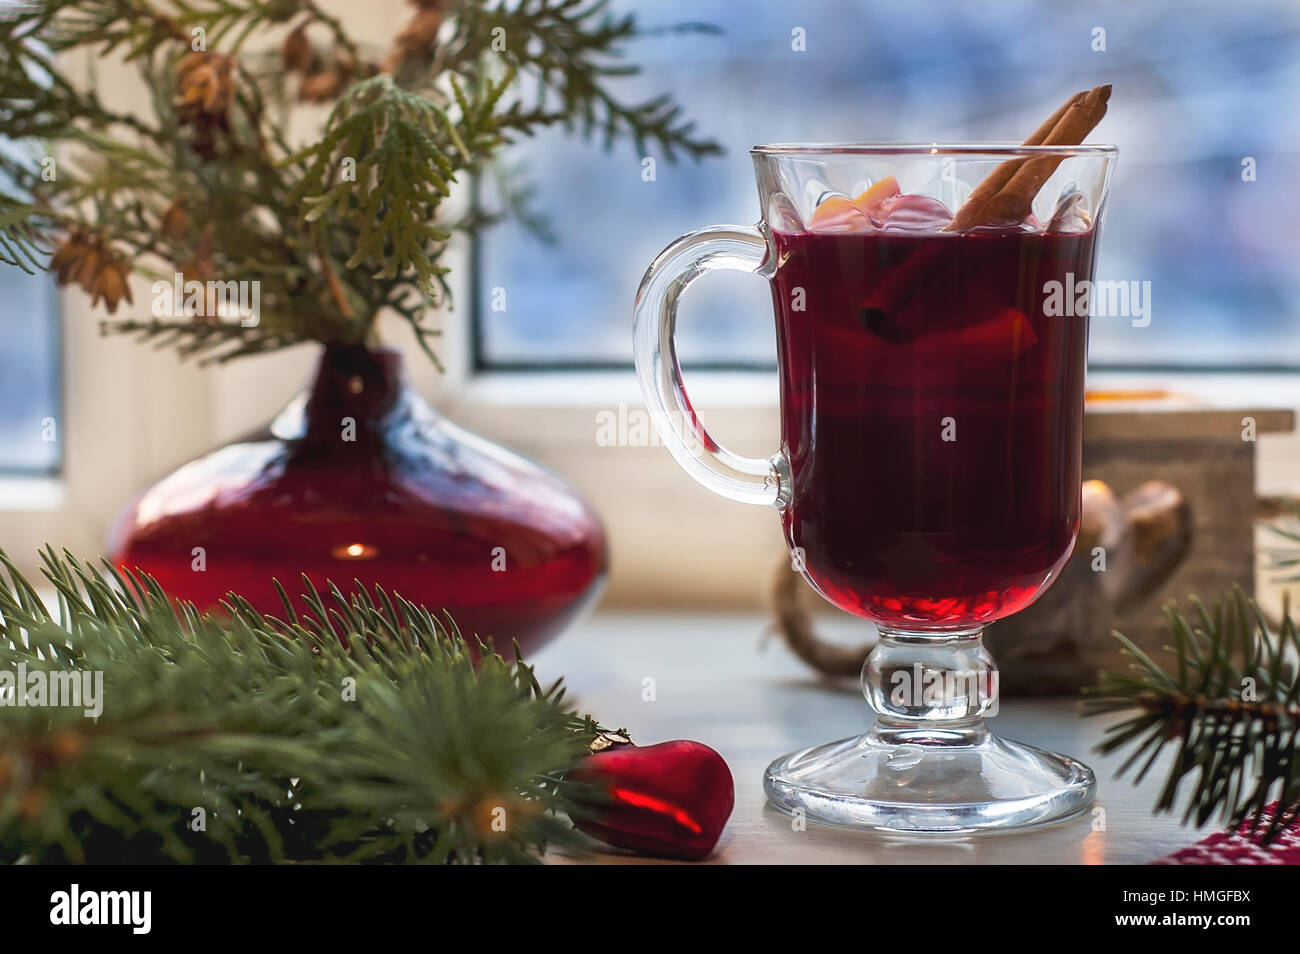 Verre de vin chaud sur table en bois avec bougie, l'orange, la cannelle et l'arbre de Noël. Maison de vacances d'hiver, Noël, nouvel an concept Banque D'Images